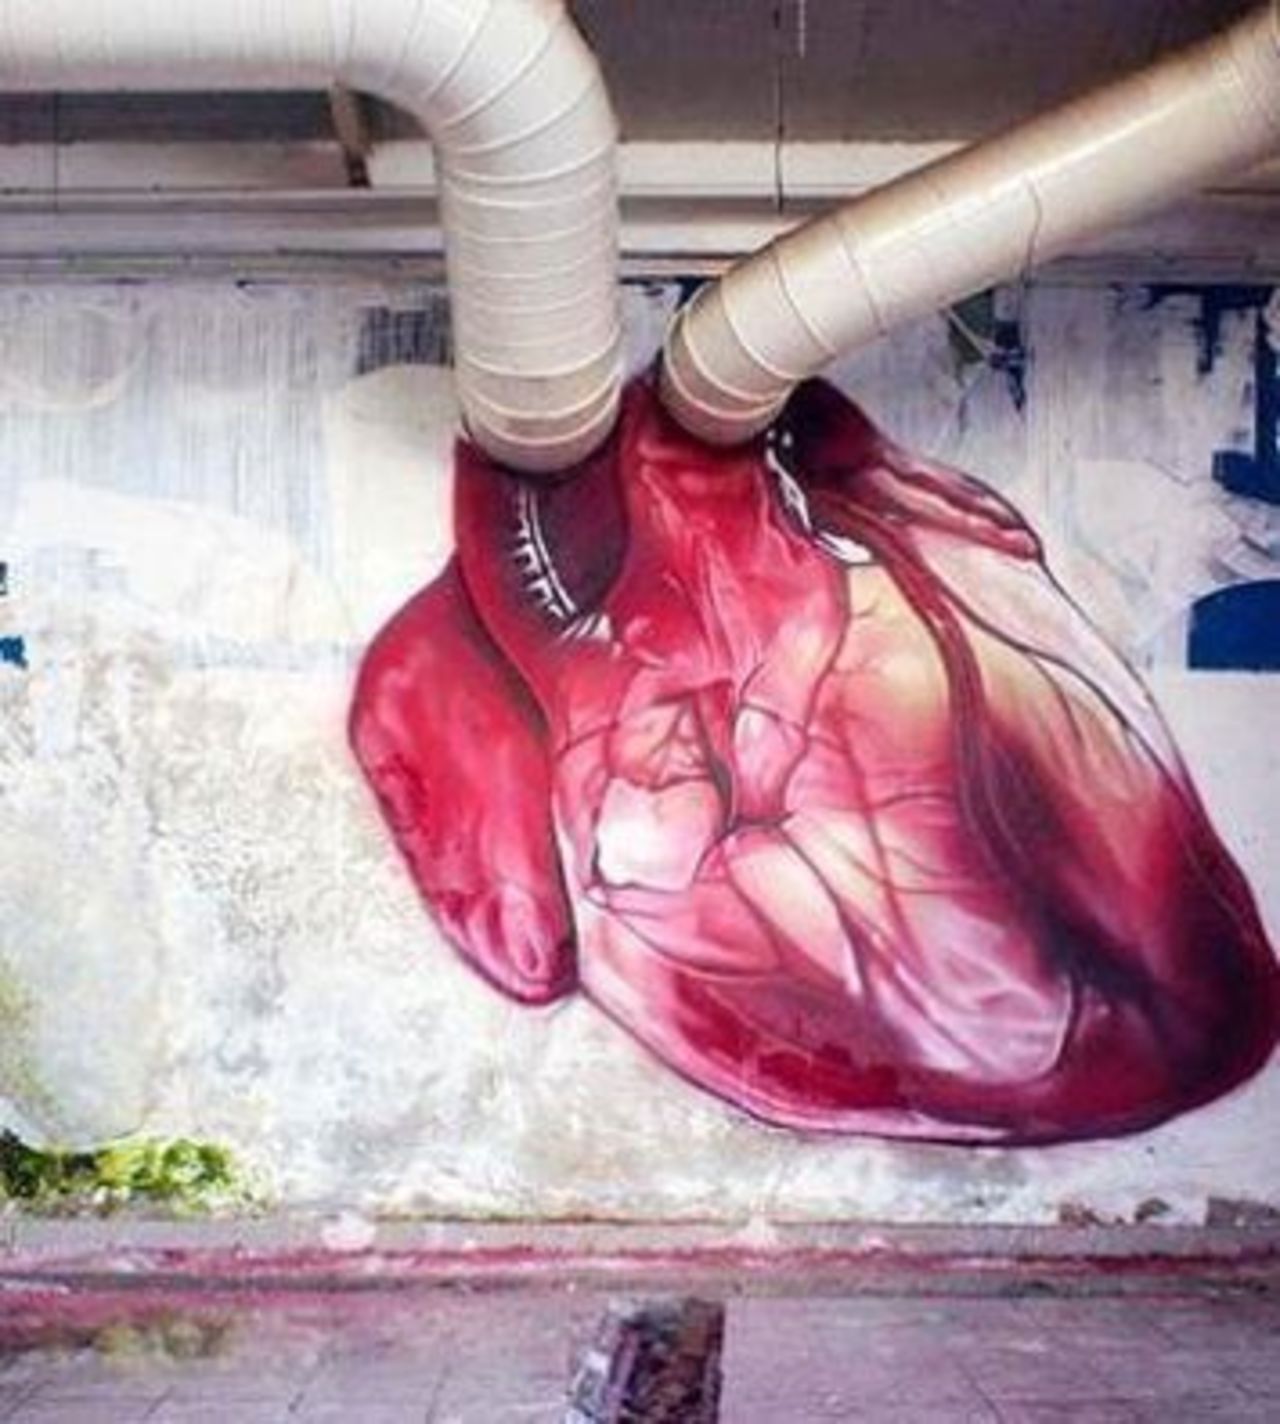 #Heart – Creative #Streetart | Be ▲rtist - Be ▲rt https://beartistbeart.com/2016/08/22/heart-creative-streetart/?utm_campaign=crowdfire&utm_content=crowdfire&utm_medium=social&utm_source=twitter https://t.co/MkVMfr6Ryl